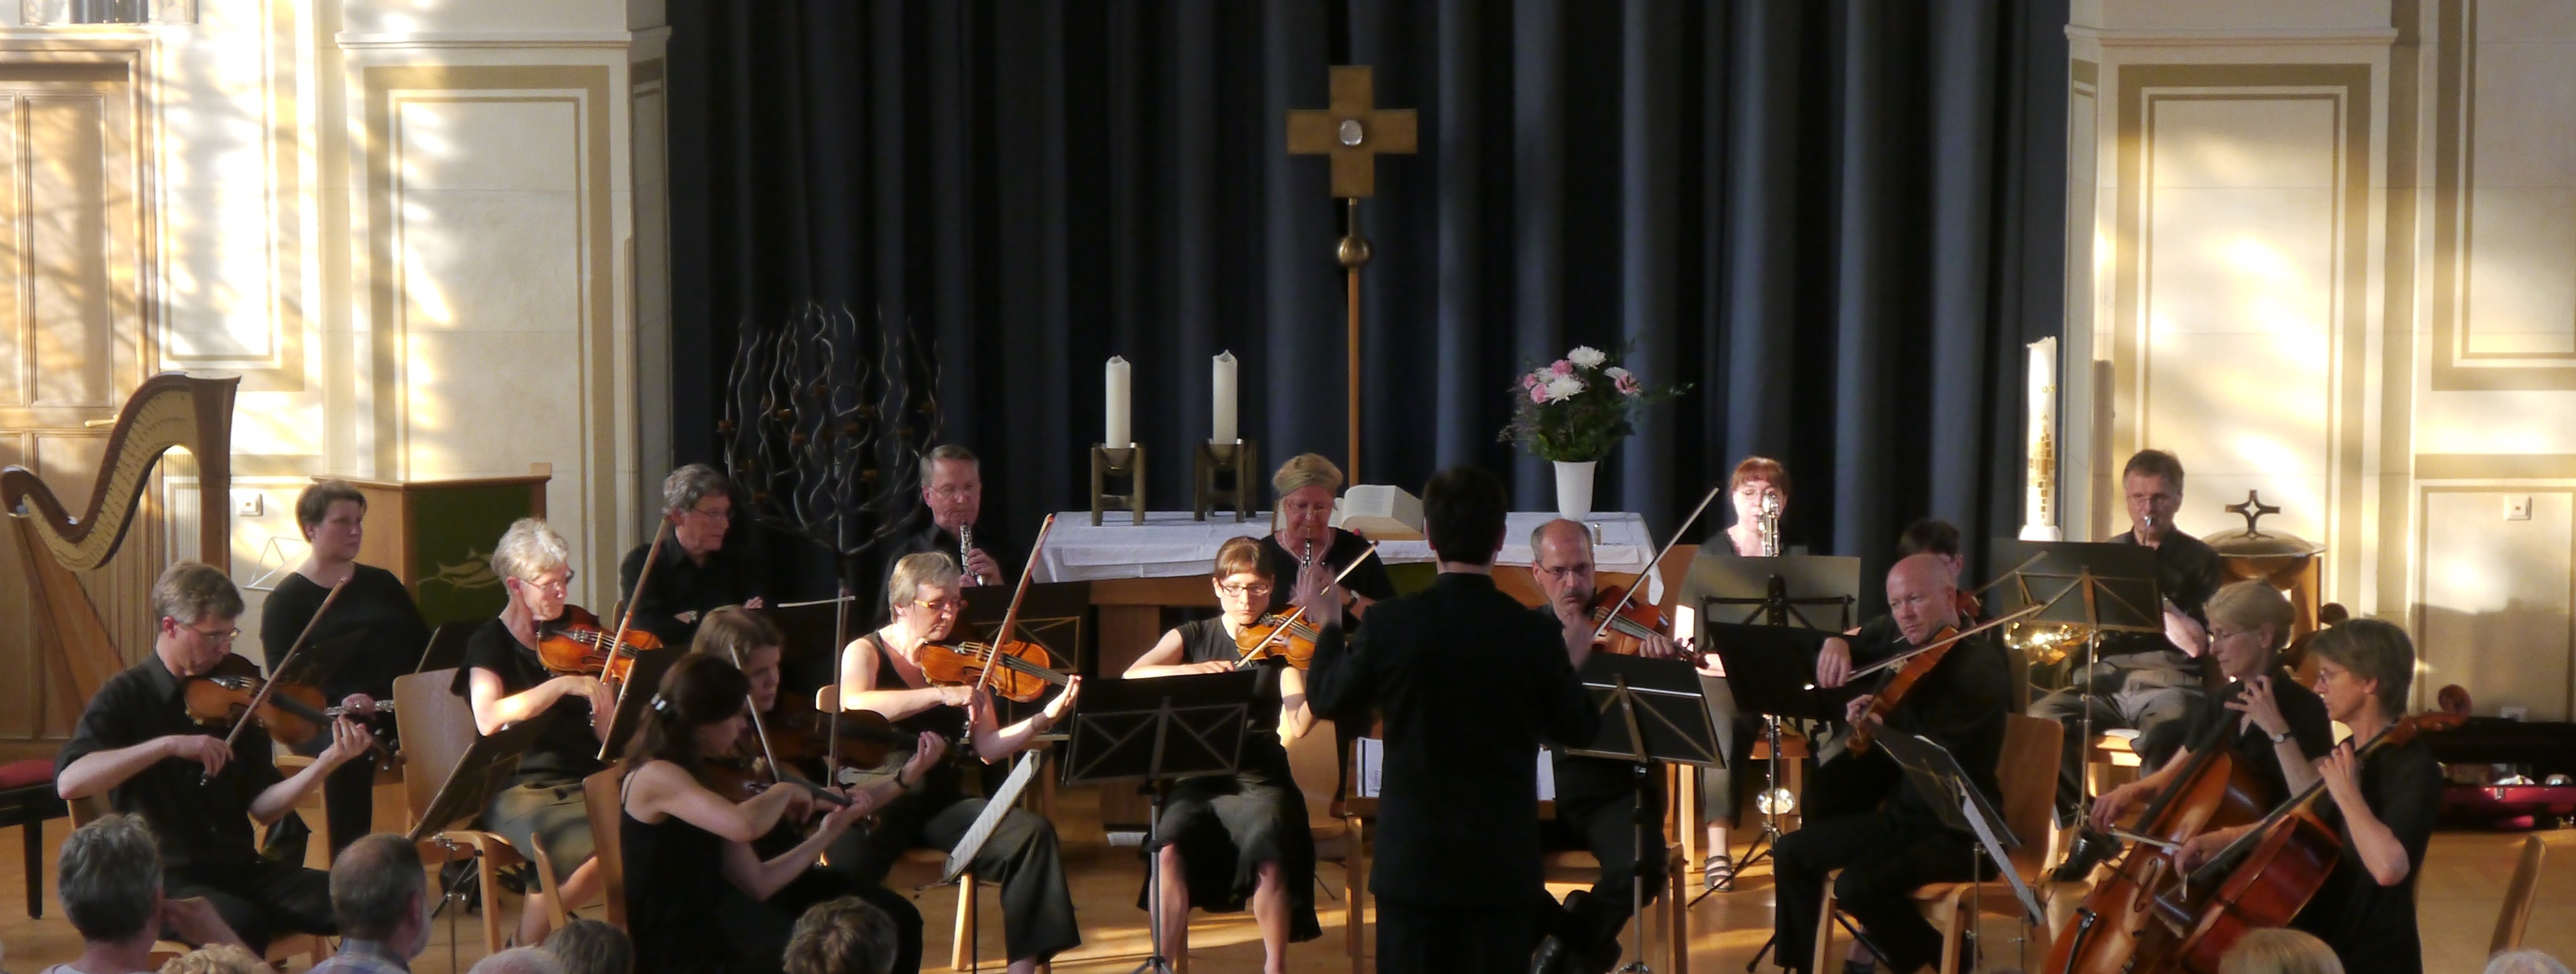 Konzert in der Alten Nazarethkirche